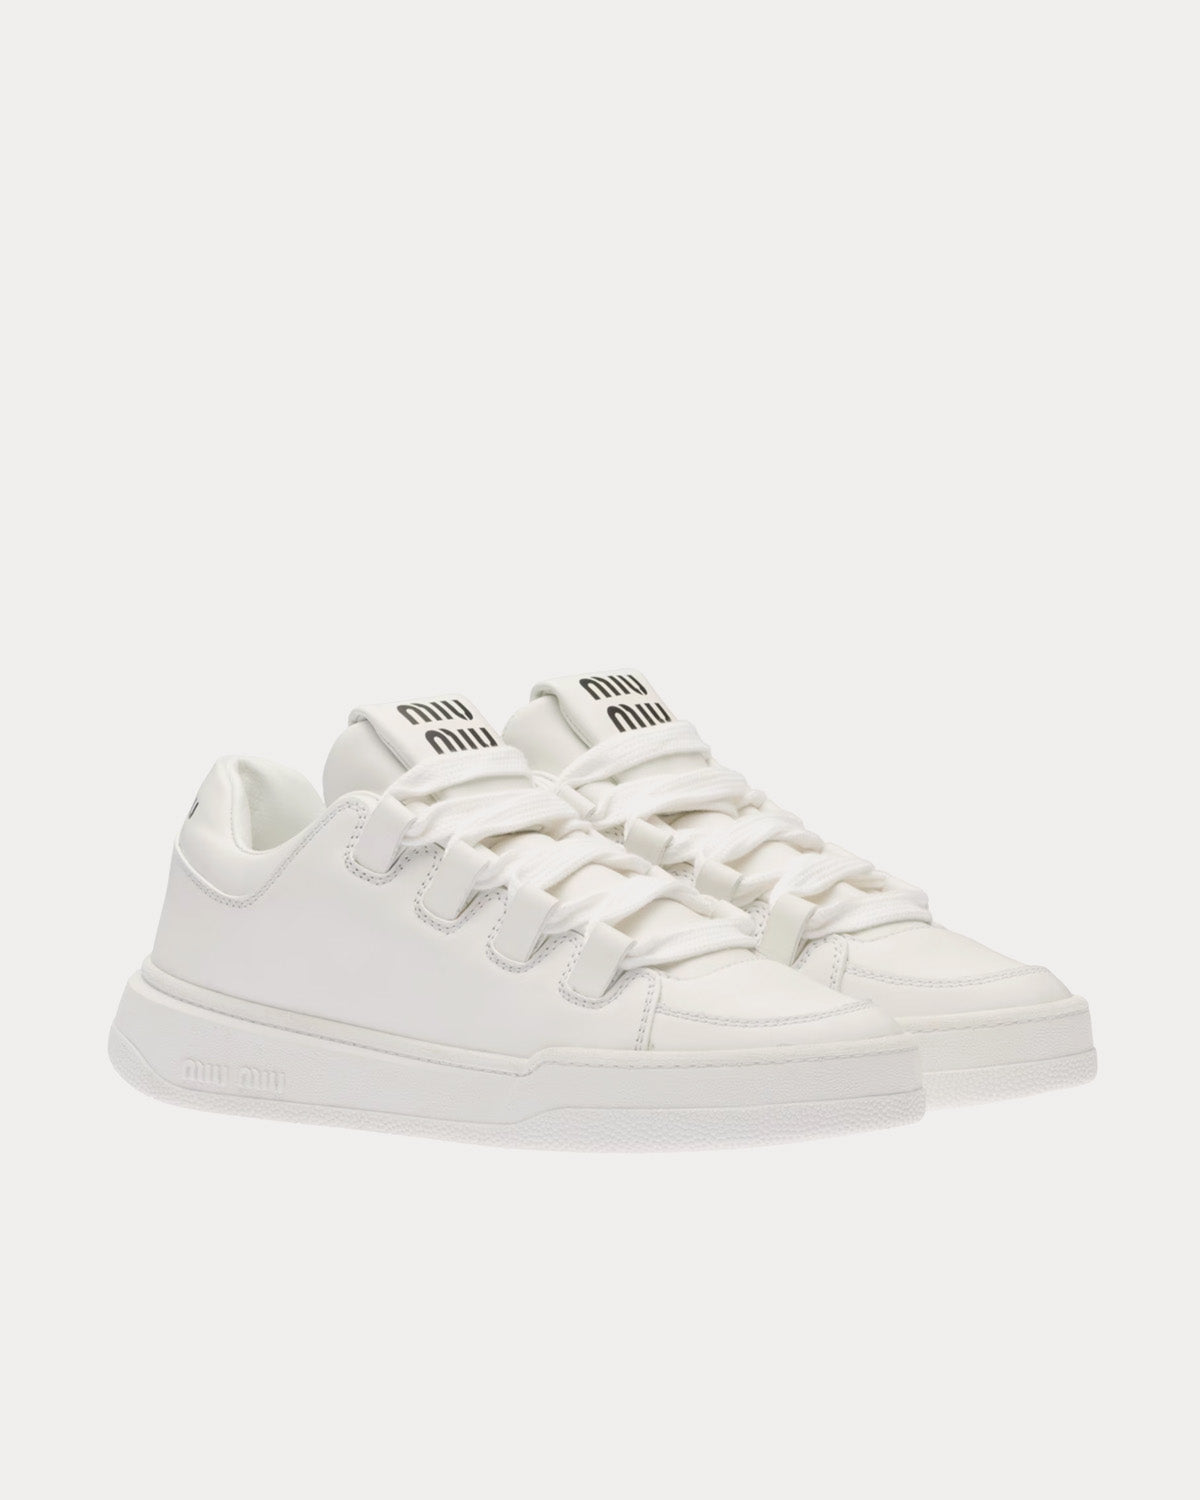 Miu Miu - Leather White Low Top Sneakers